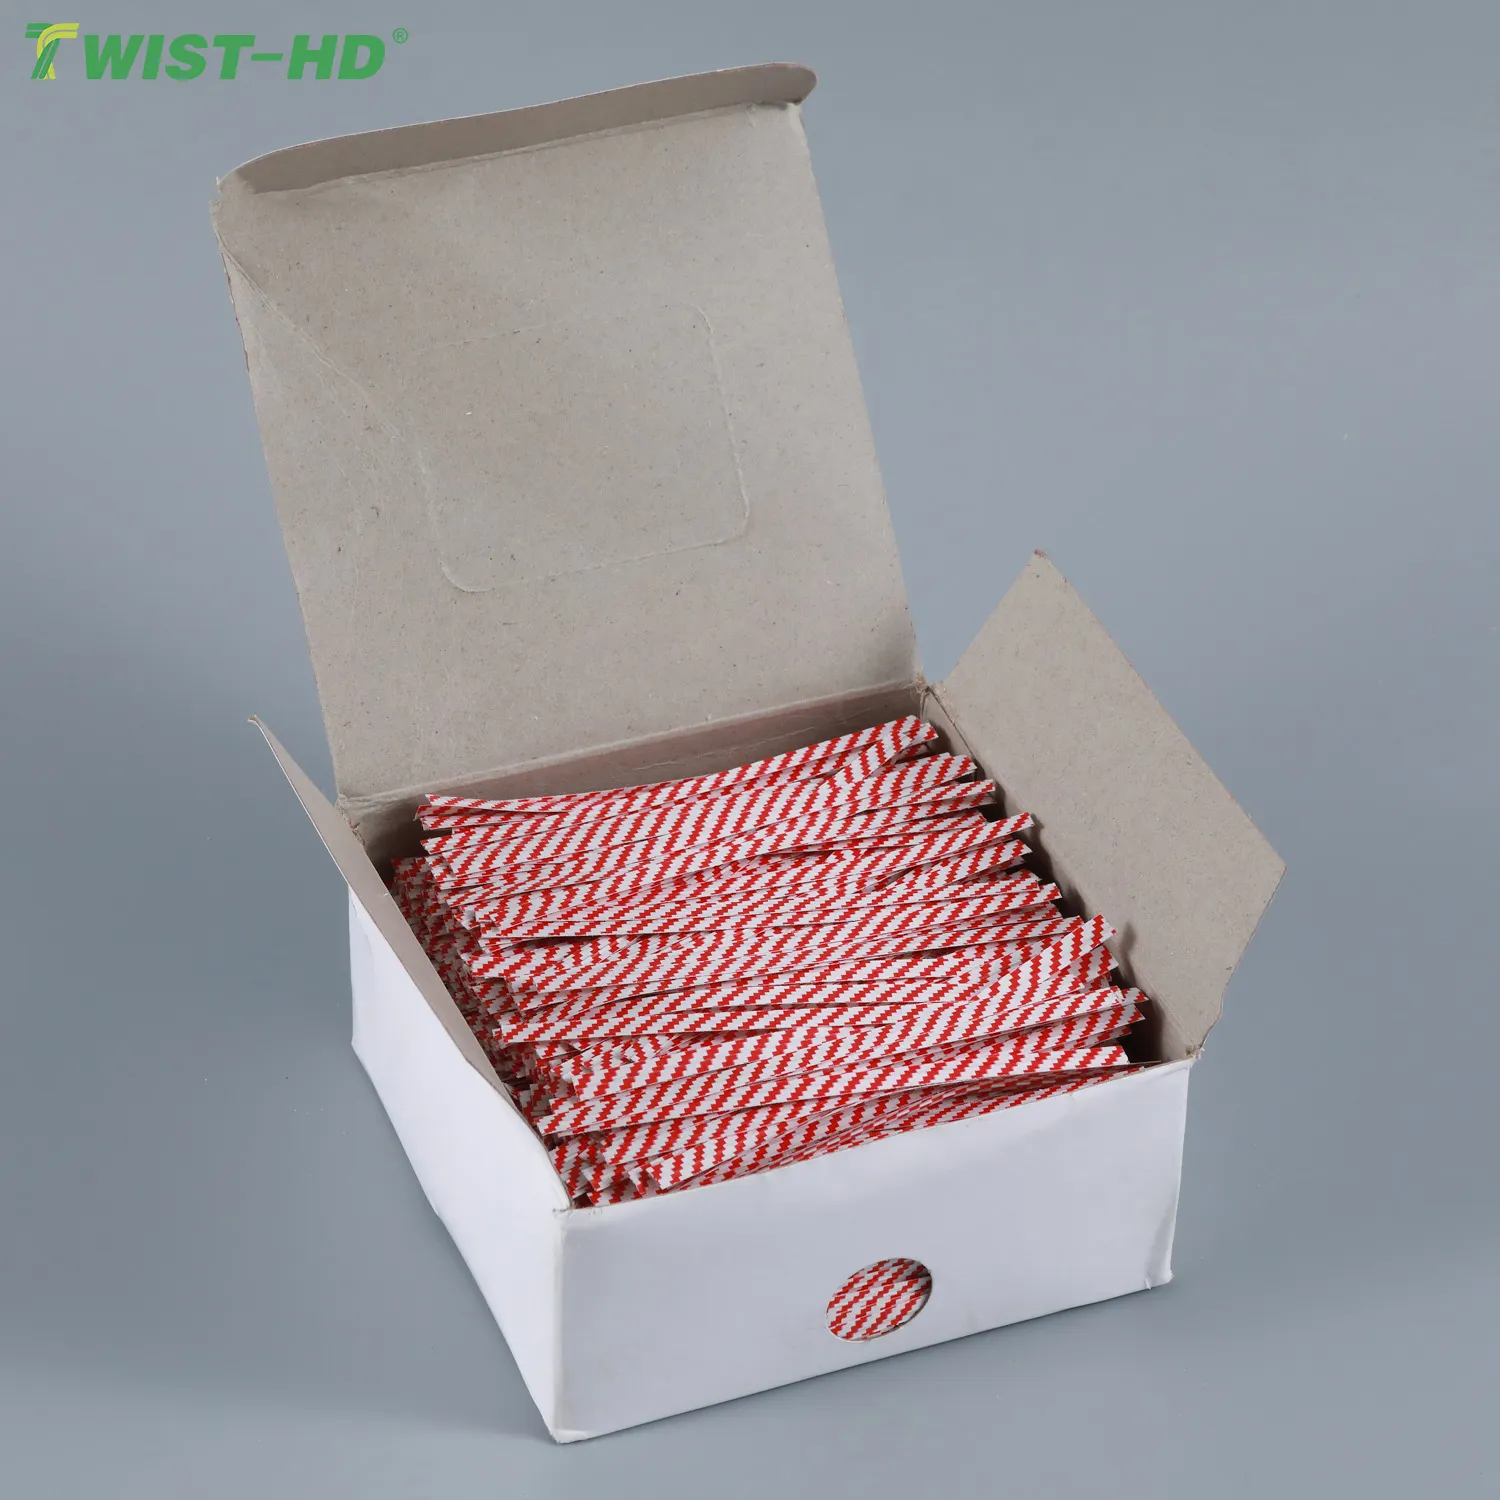 Twist-HD Giấy Đầy Màu Sắc Twist Ties Đối Với Quà Tặng/Đường/Lollipop Sticks